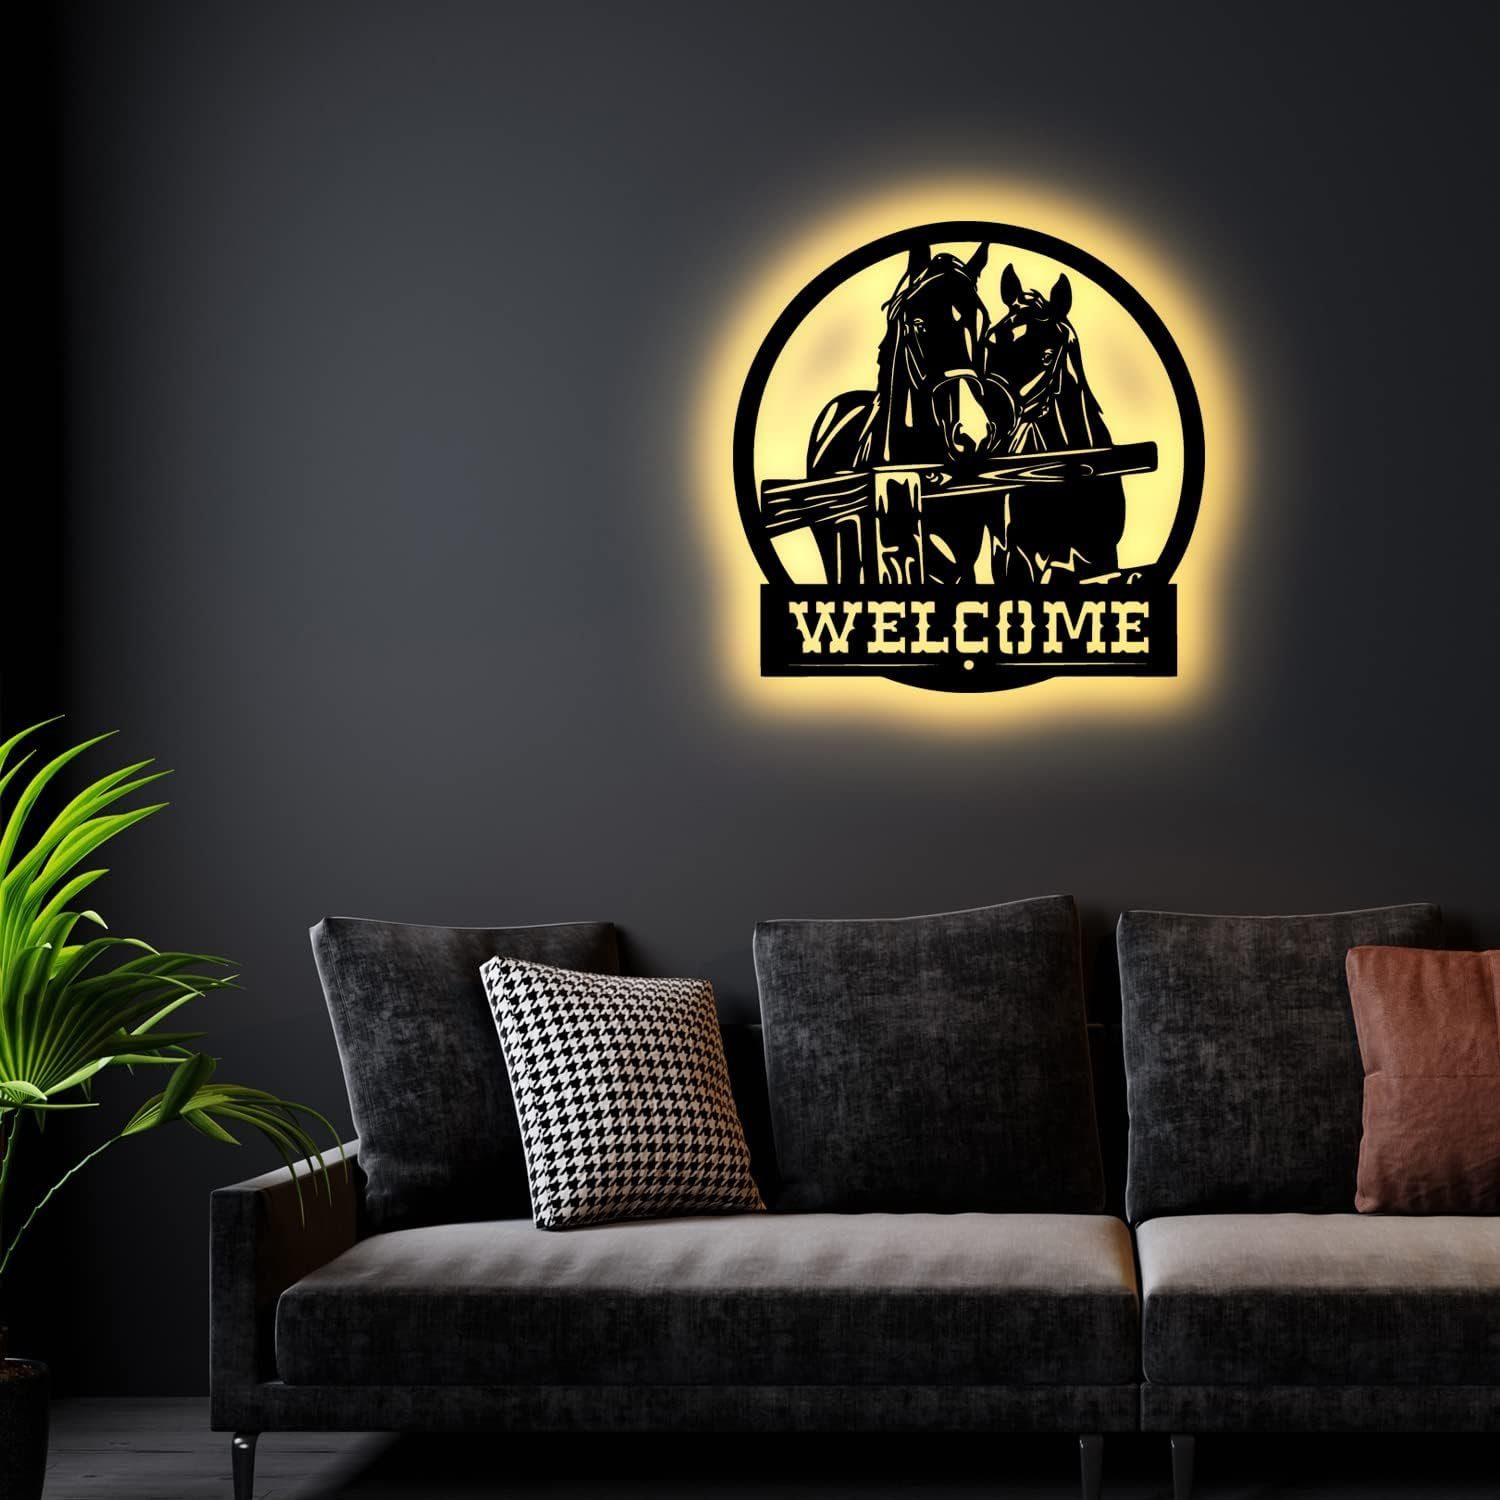 LEON FOLIEN LED Dekofigur Welcome Pferd Geschenk LED Wandlampe Pferde Lampen in Buche #1, LED fest integriert